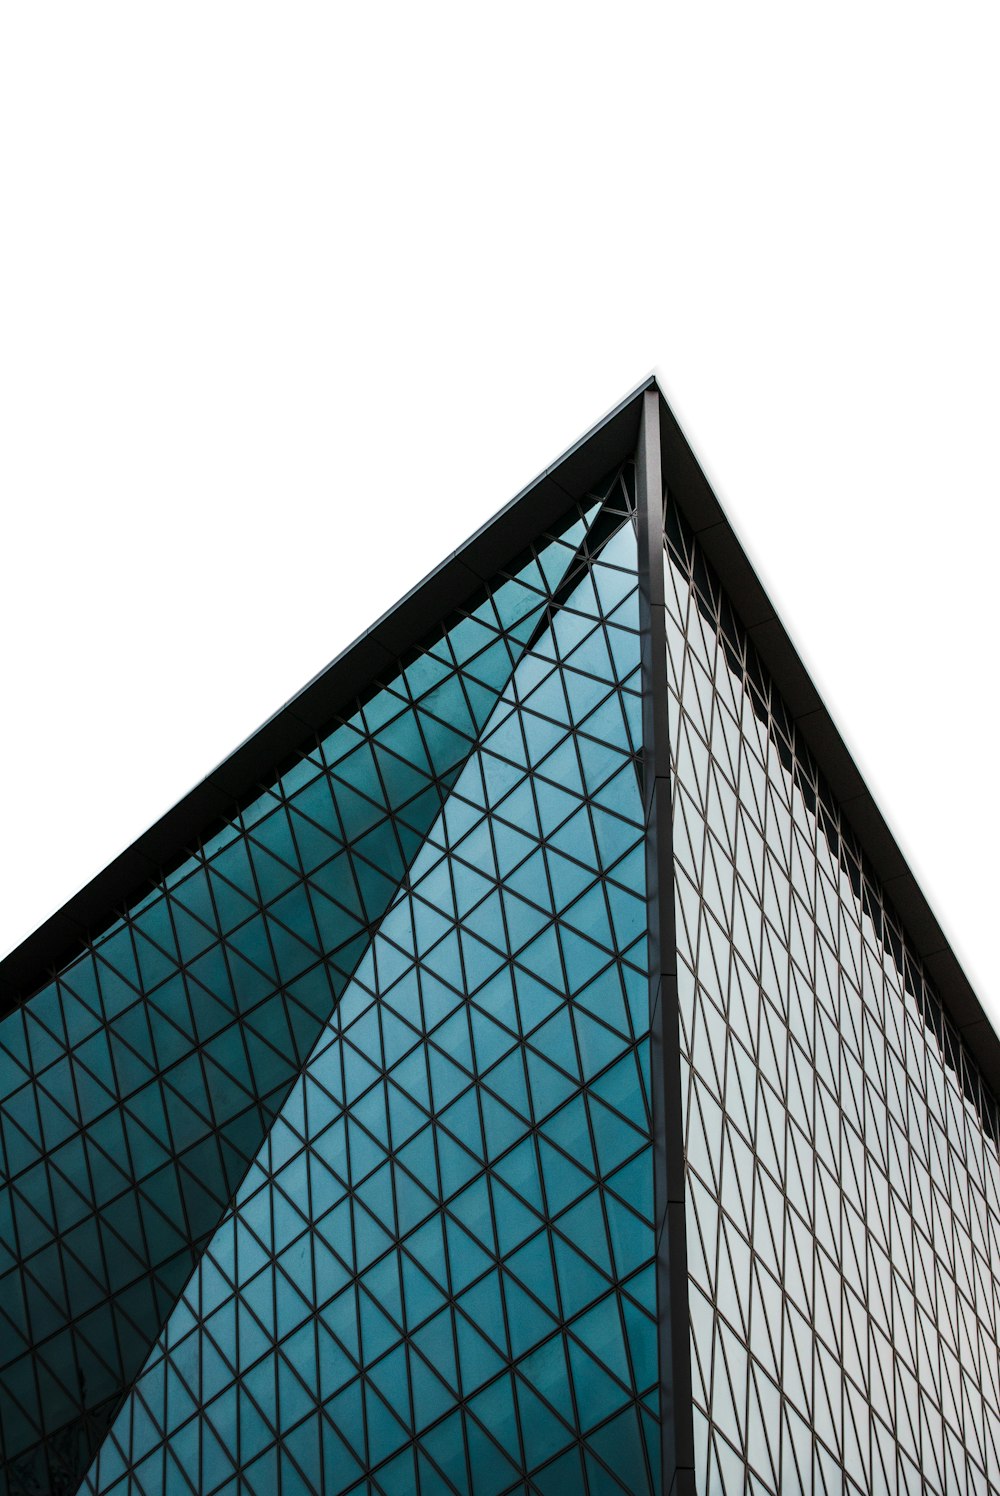 Photographie en contre-plongée d’un immeuble de grande hauteur aux murs de verre gris